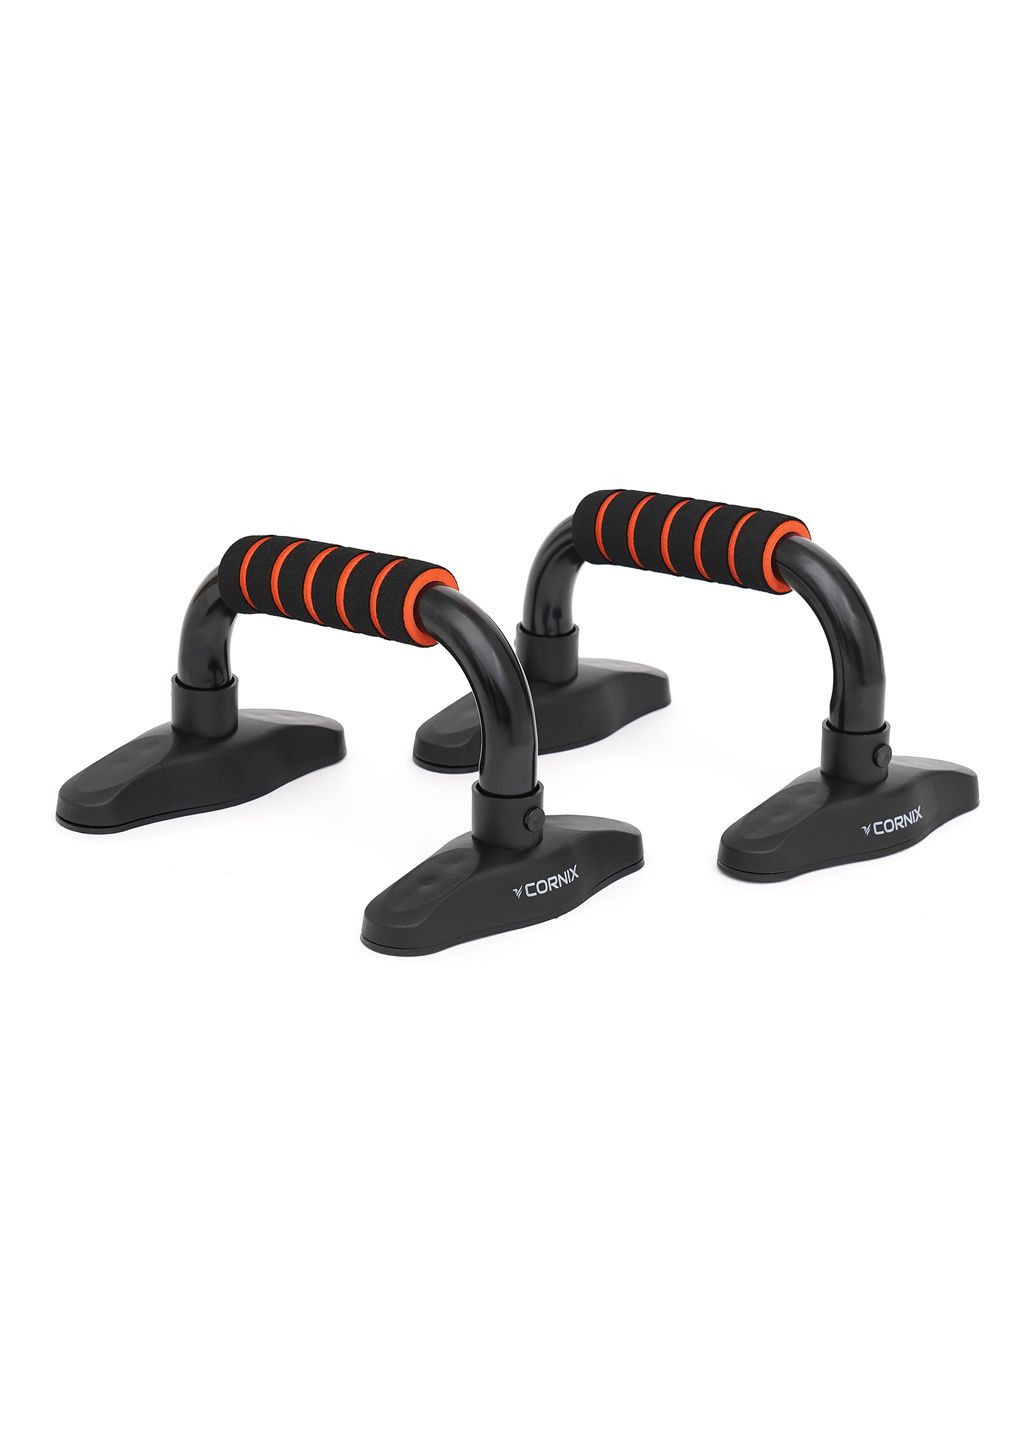 Упори для віджимань Push-up Bars Black/Orange Cornix xr-0168 (275654337)